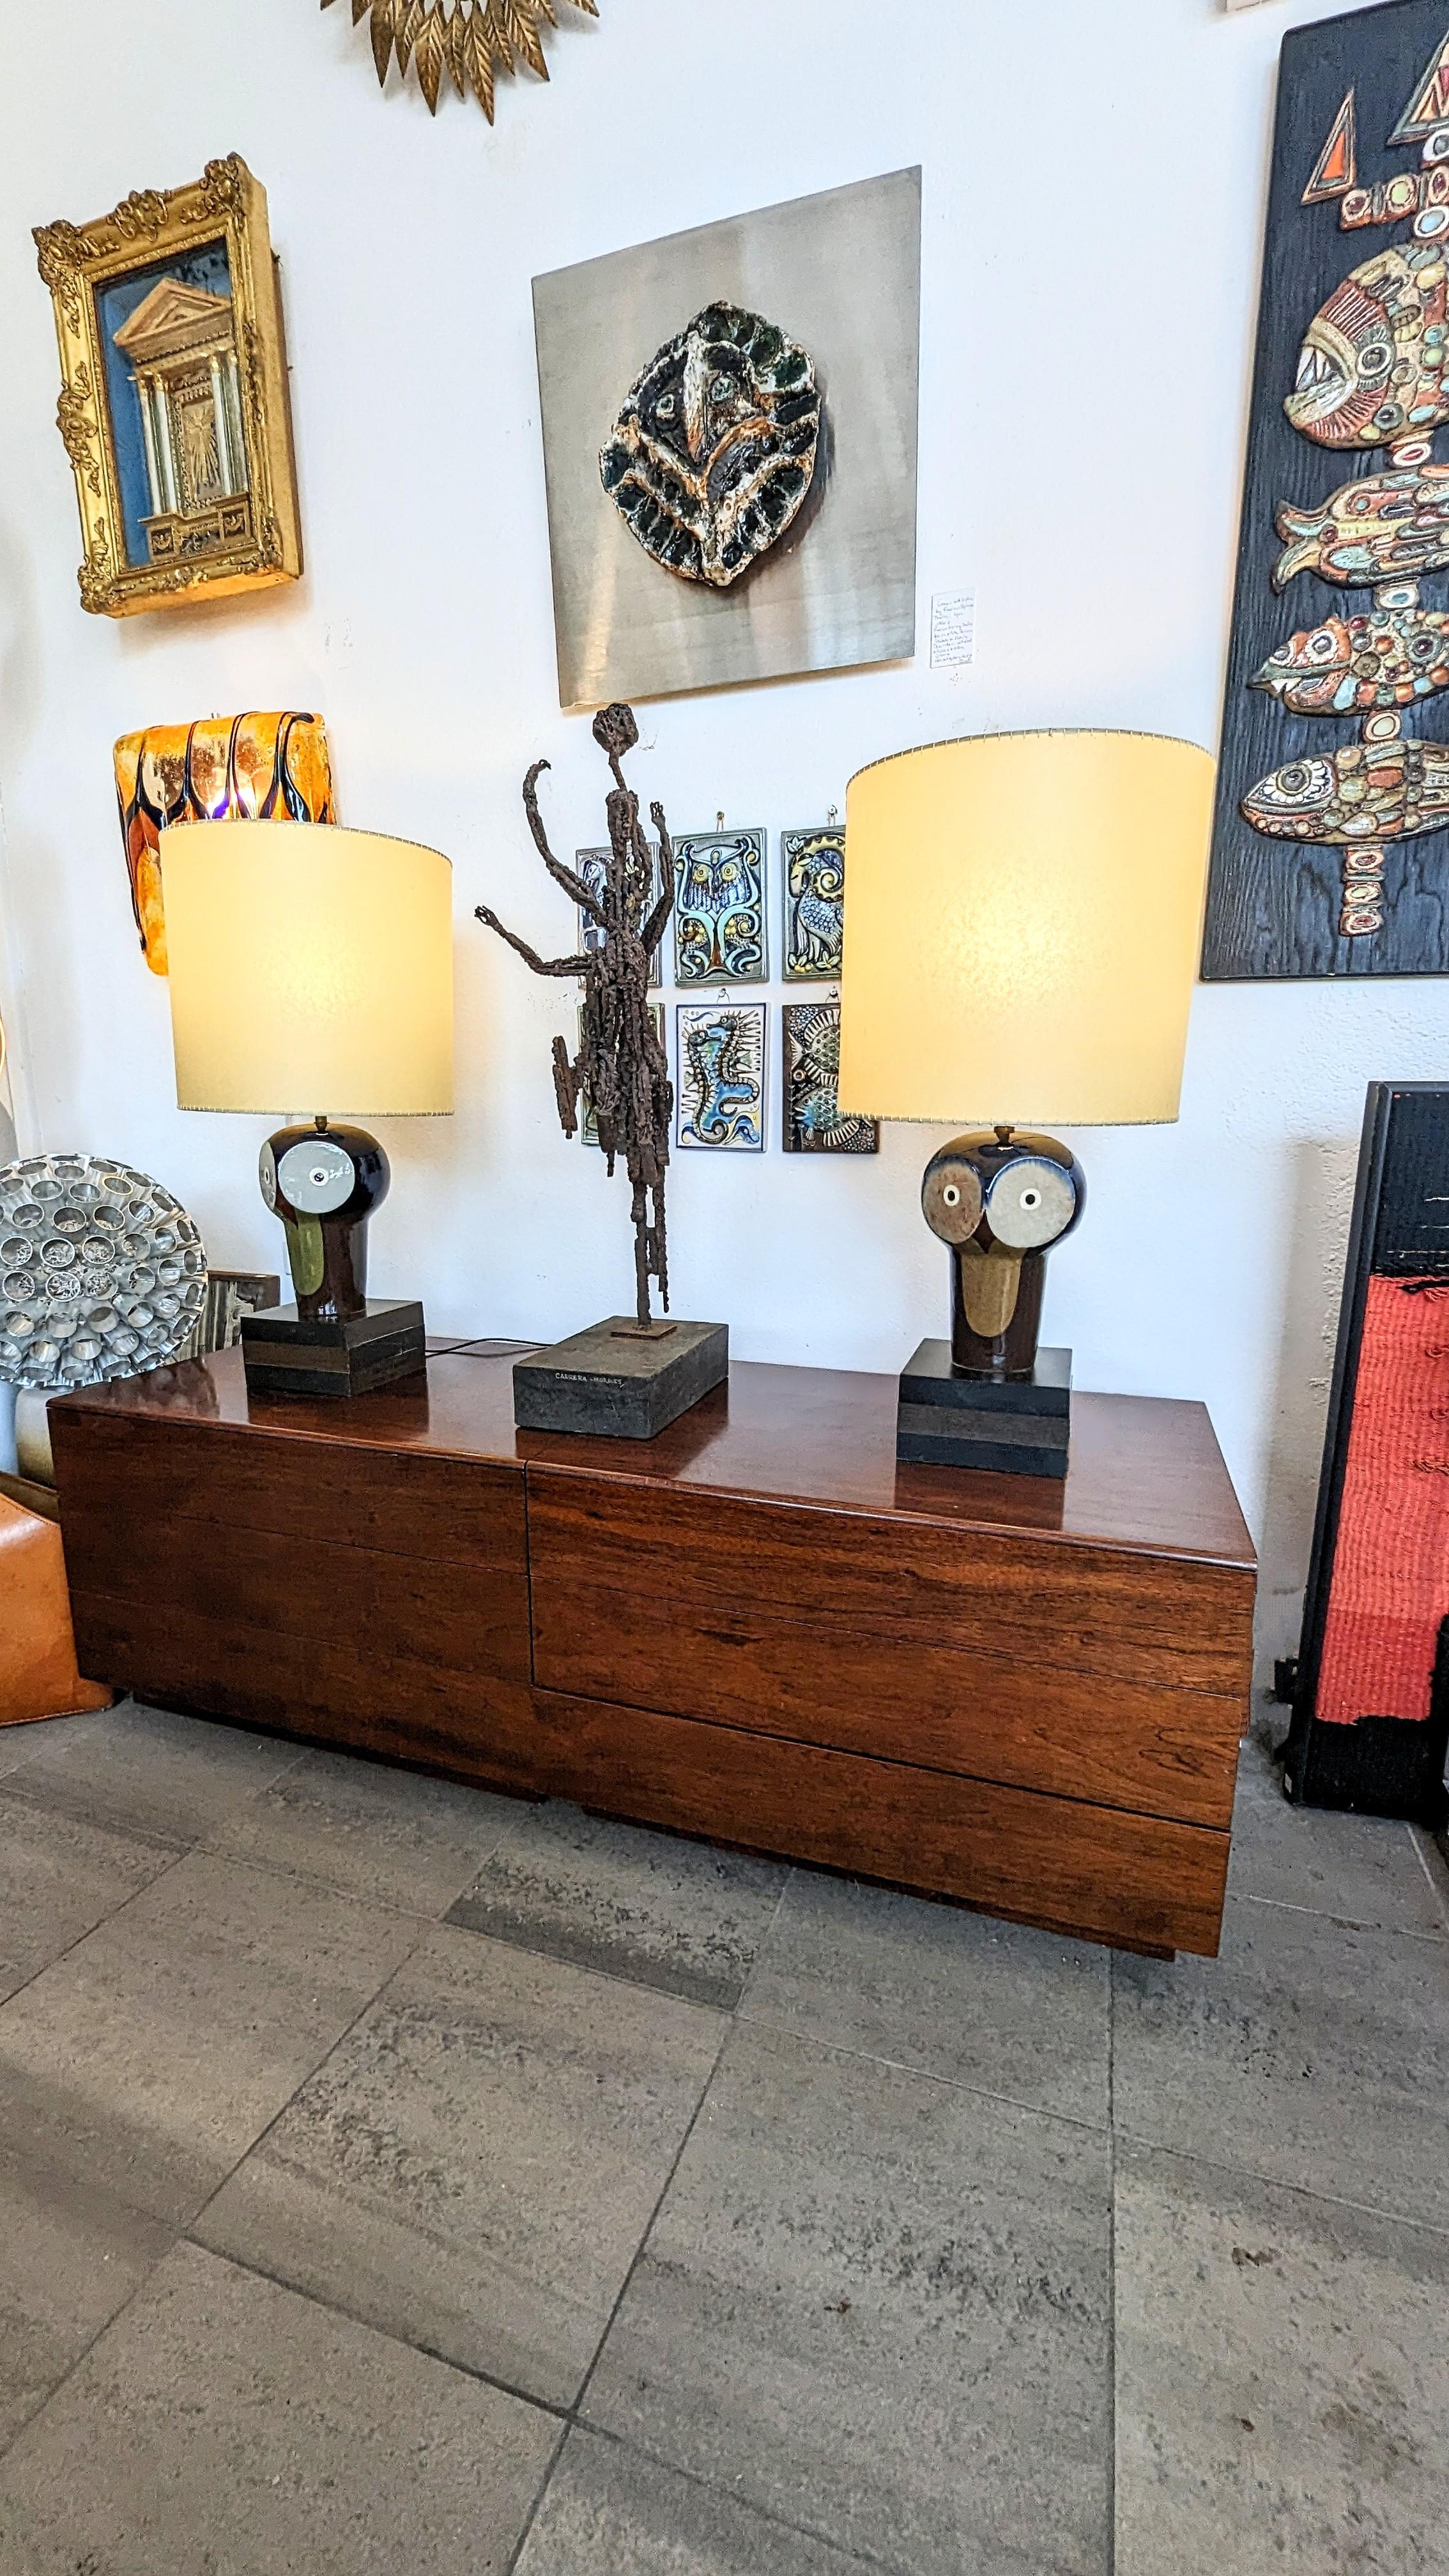 Rare et magnifique paire de lampes de table hibou en céramique de Jordi Aguadé, fabriquée en Espagne dans les années 1970. 
Né à Barcelone en 1925, Jordi Aguadé a fondé son atelier de céramique en 1950. Étudiant à l'école de la Generalitat de